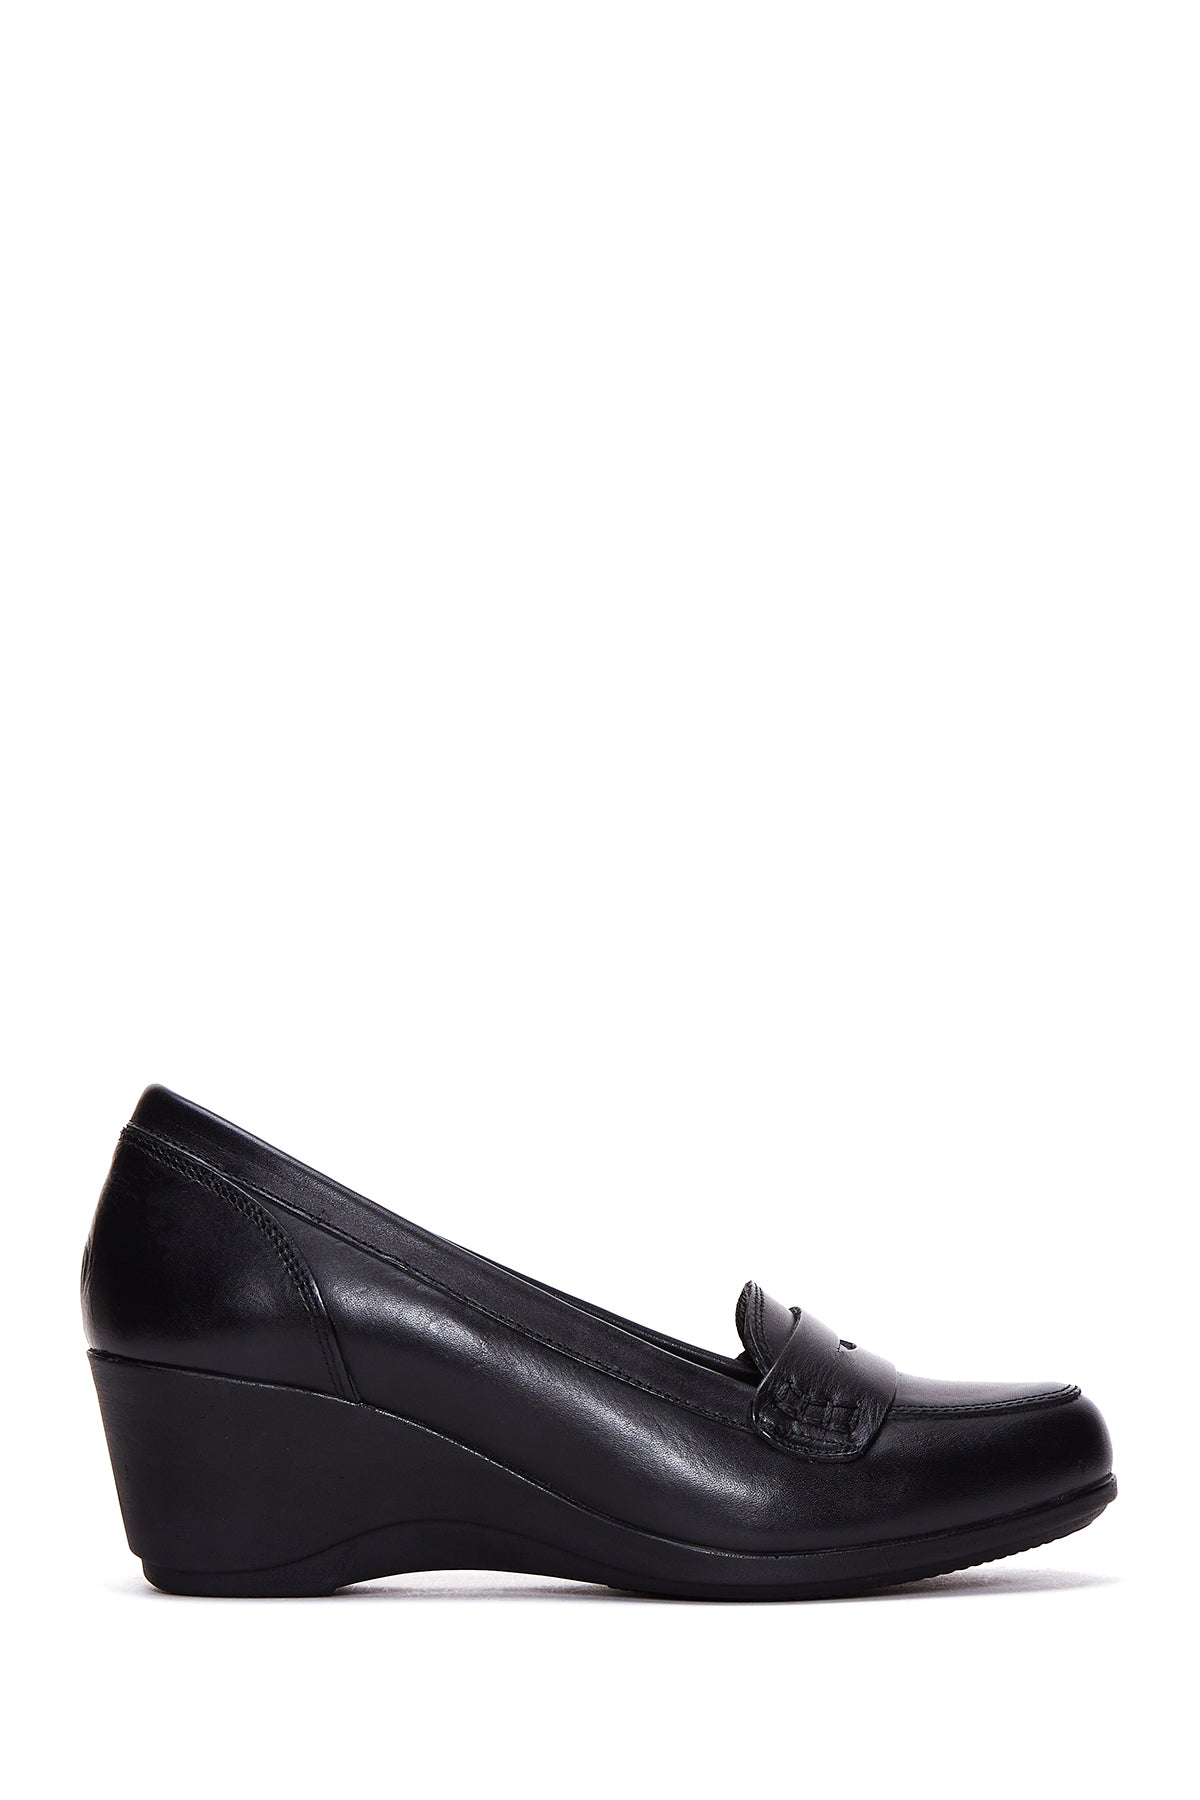 Kadın Siyah Deri Dolgu Topuklu Ayakkabı